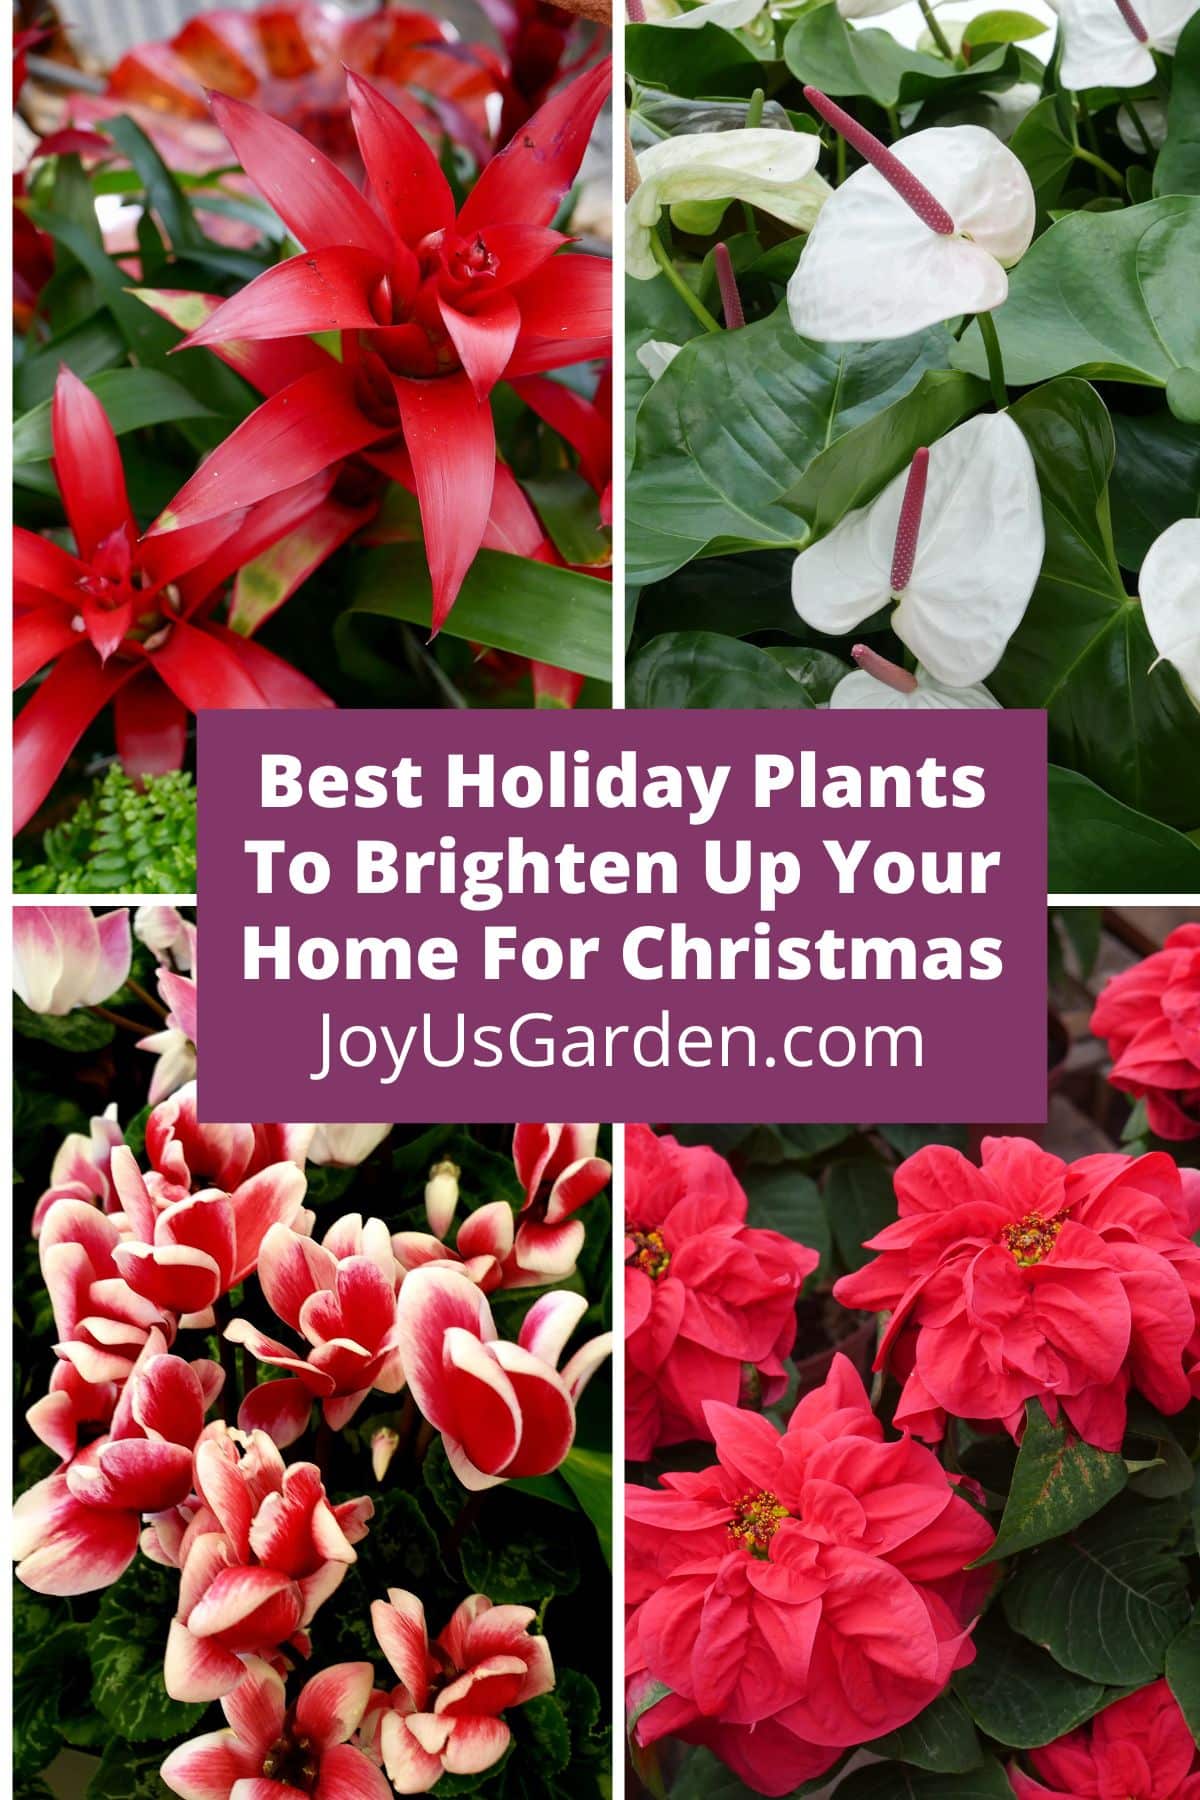  12 лучших праздничных растений, которые украсят ваш дом к Рождеству